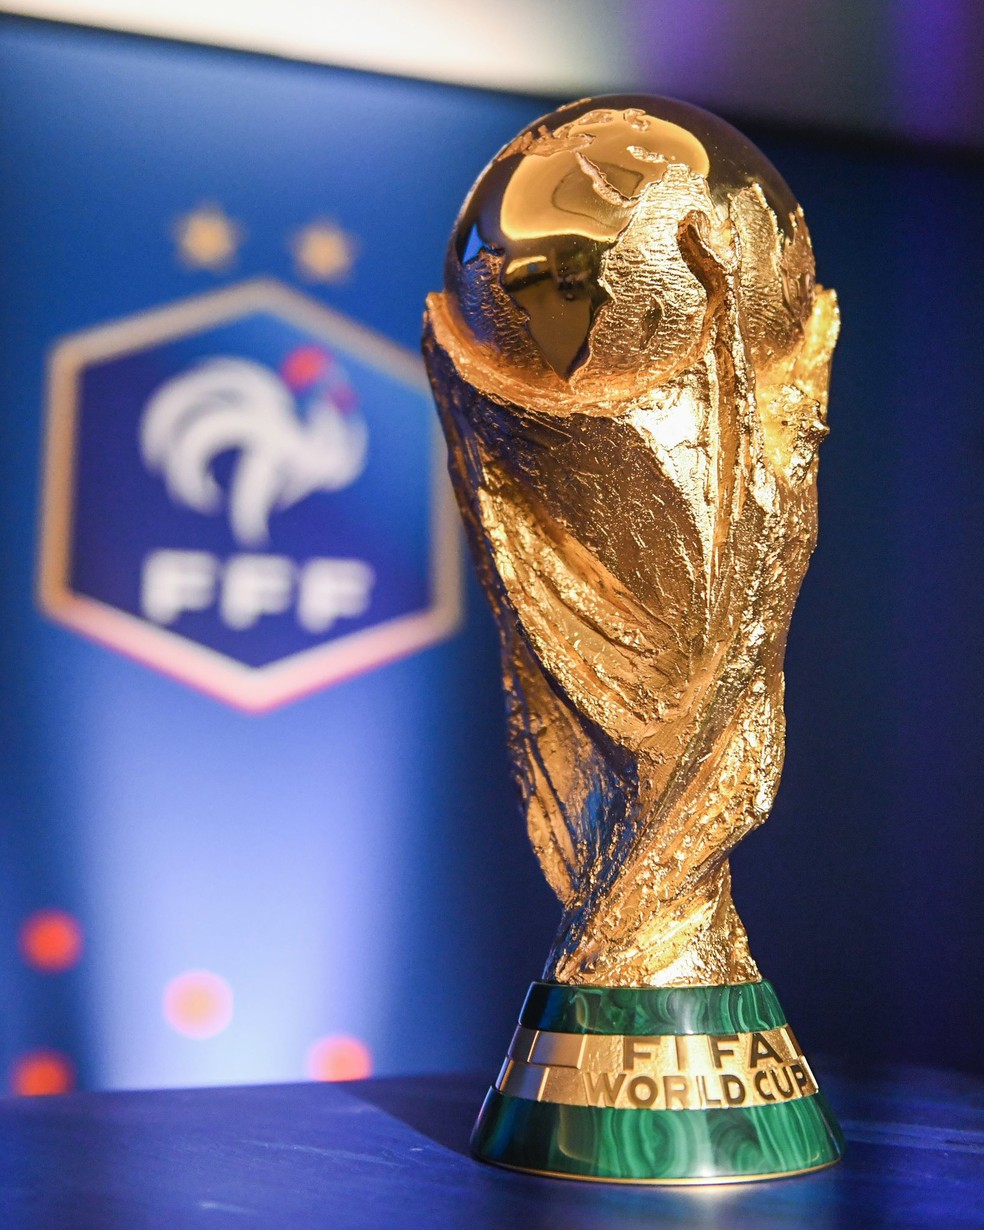 Os 25 convocados da França na Copa do Mundo 2022: lista completa da seleção